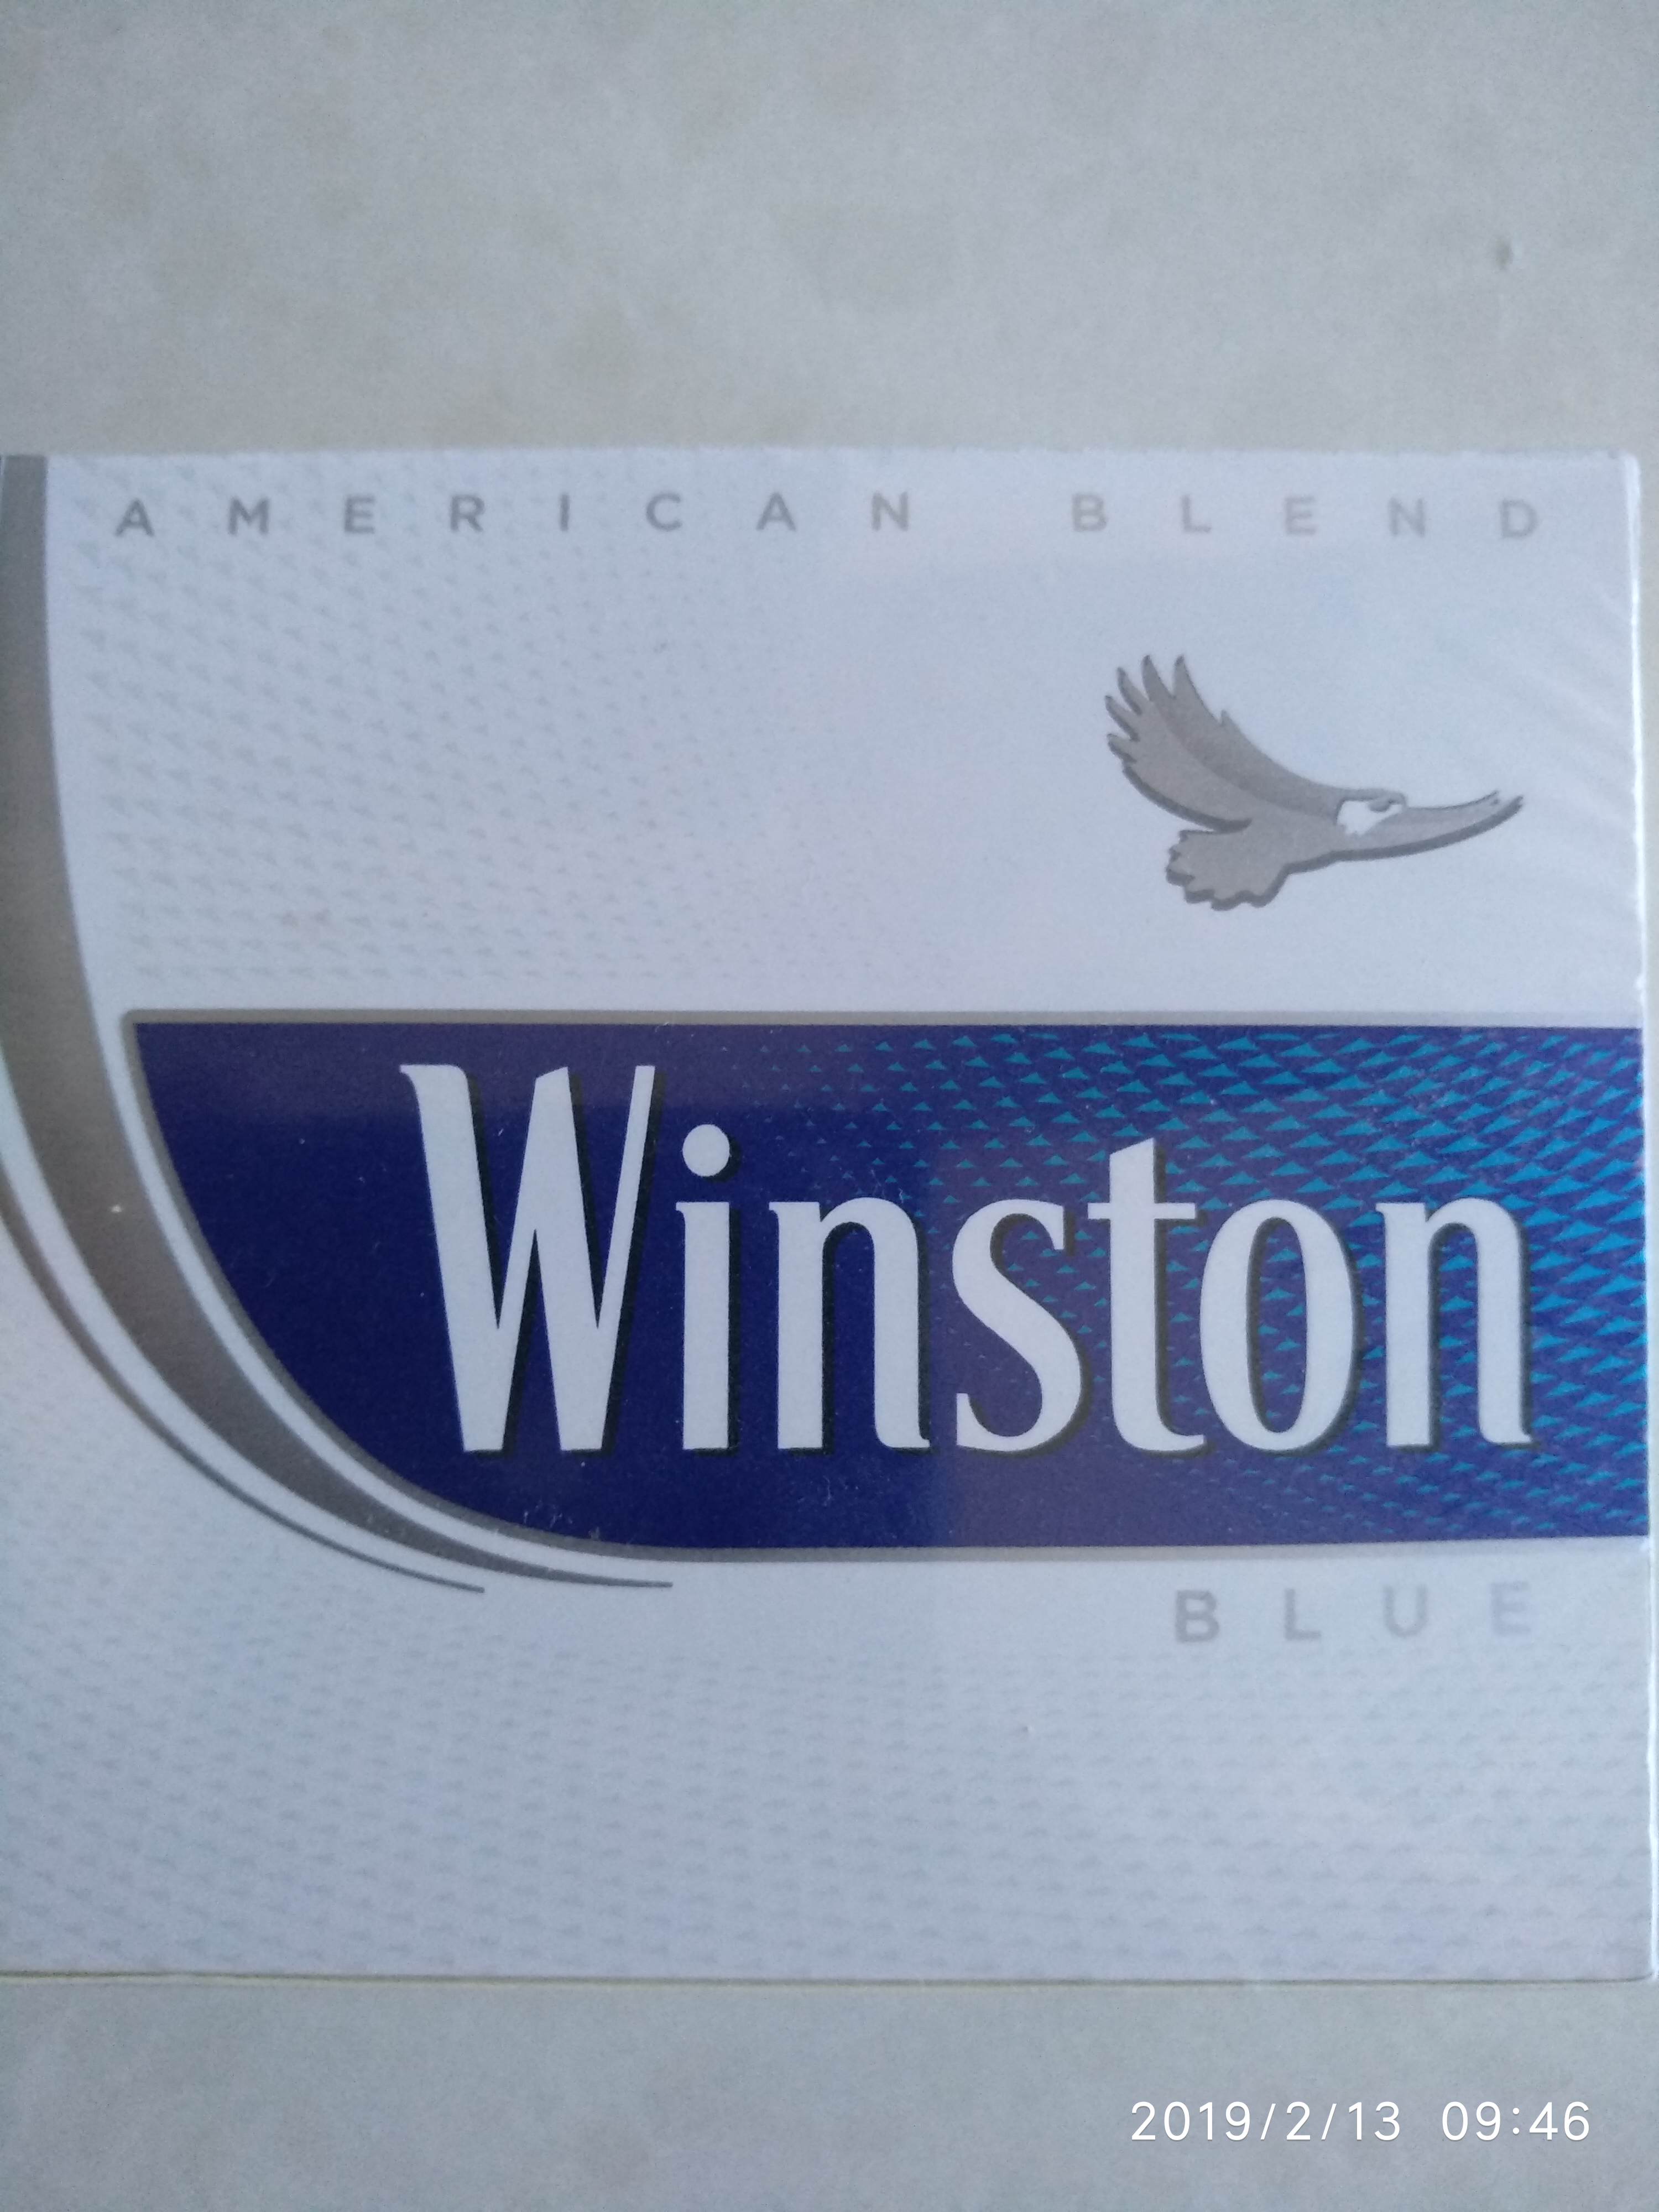 Купить винстон синий. Блок сигарет Винстон. Винстон Блю блок. Винстон синий блок. Линейка сигарет Винстон.